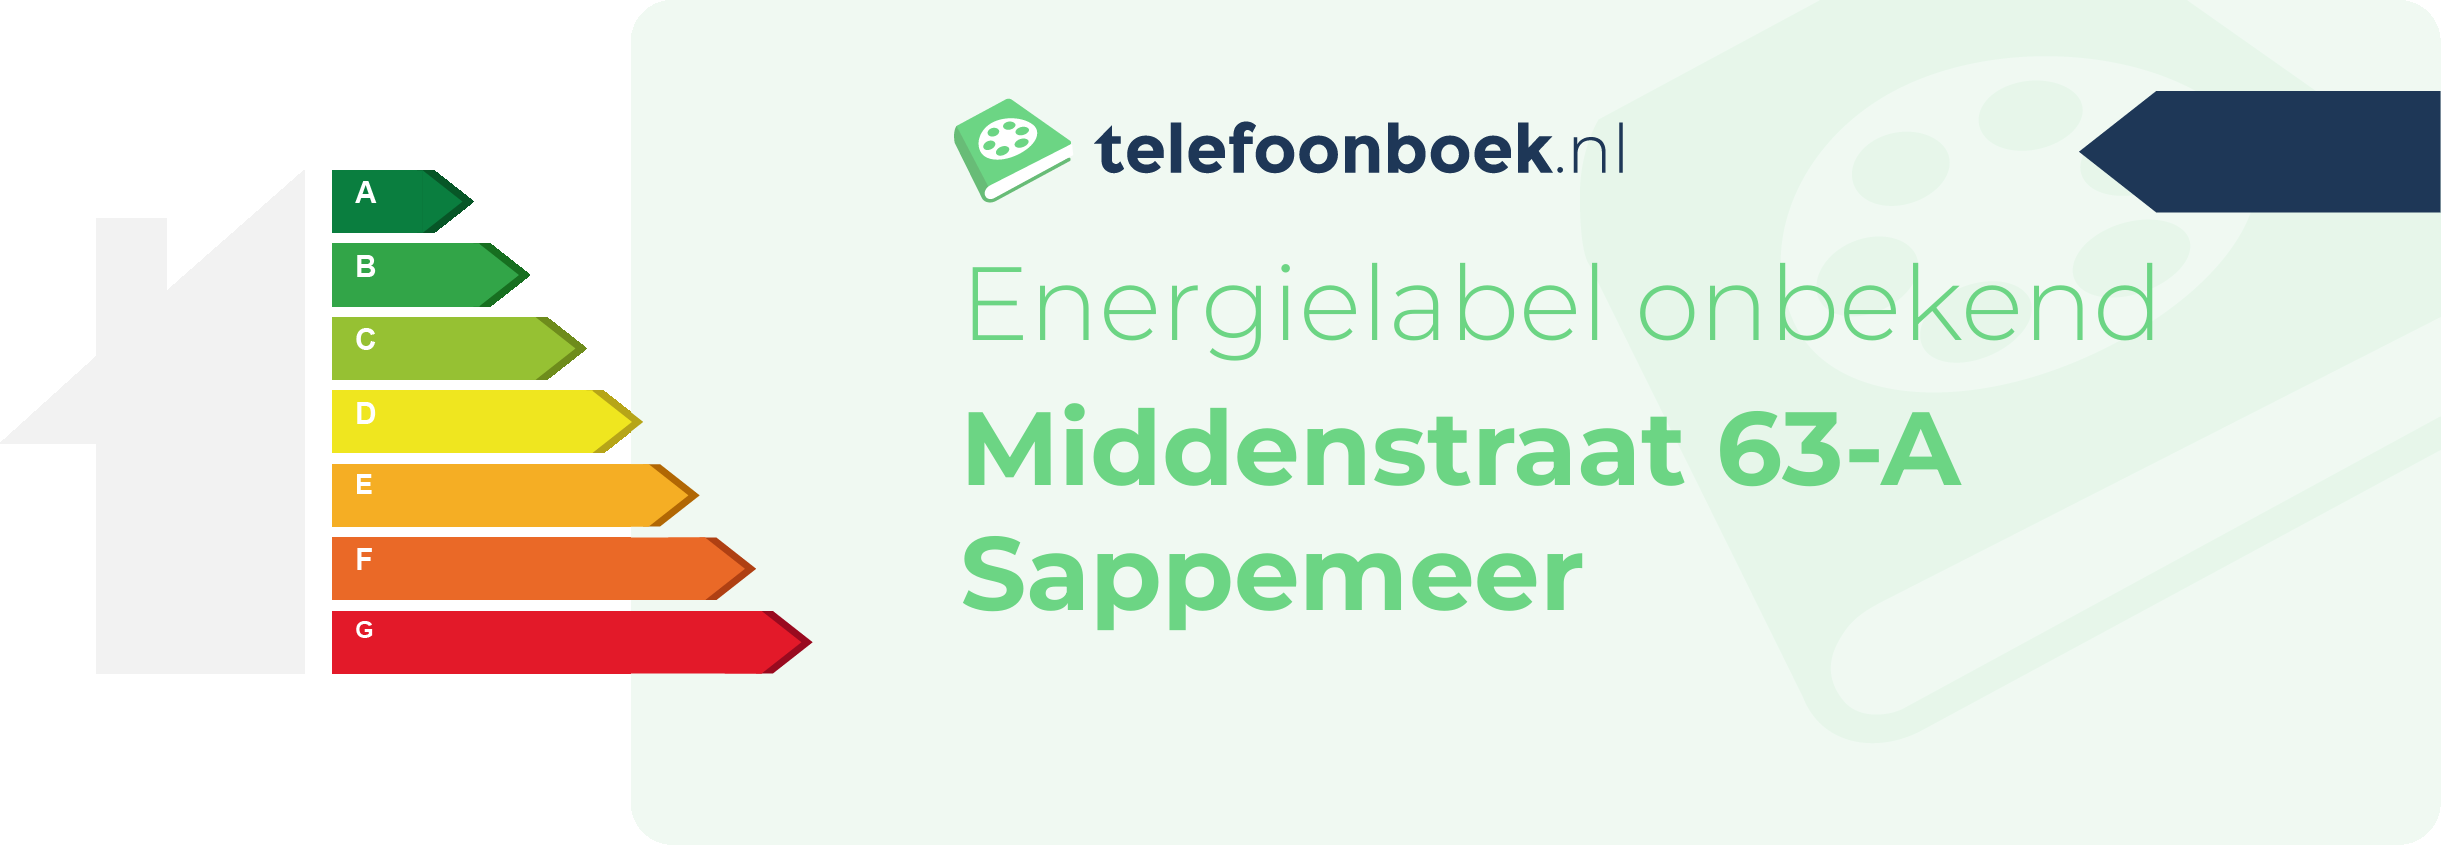 Energielabel Middenstraat 63-A Sappemeer